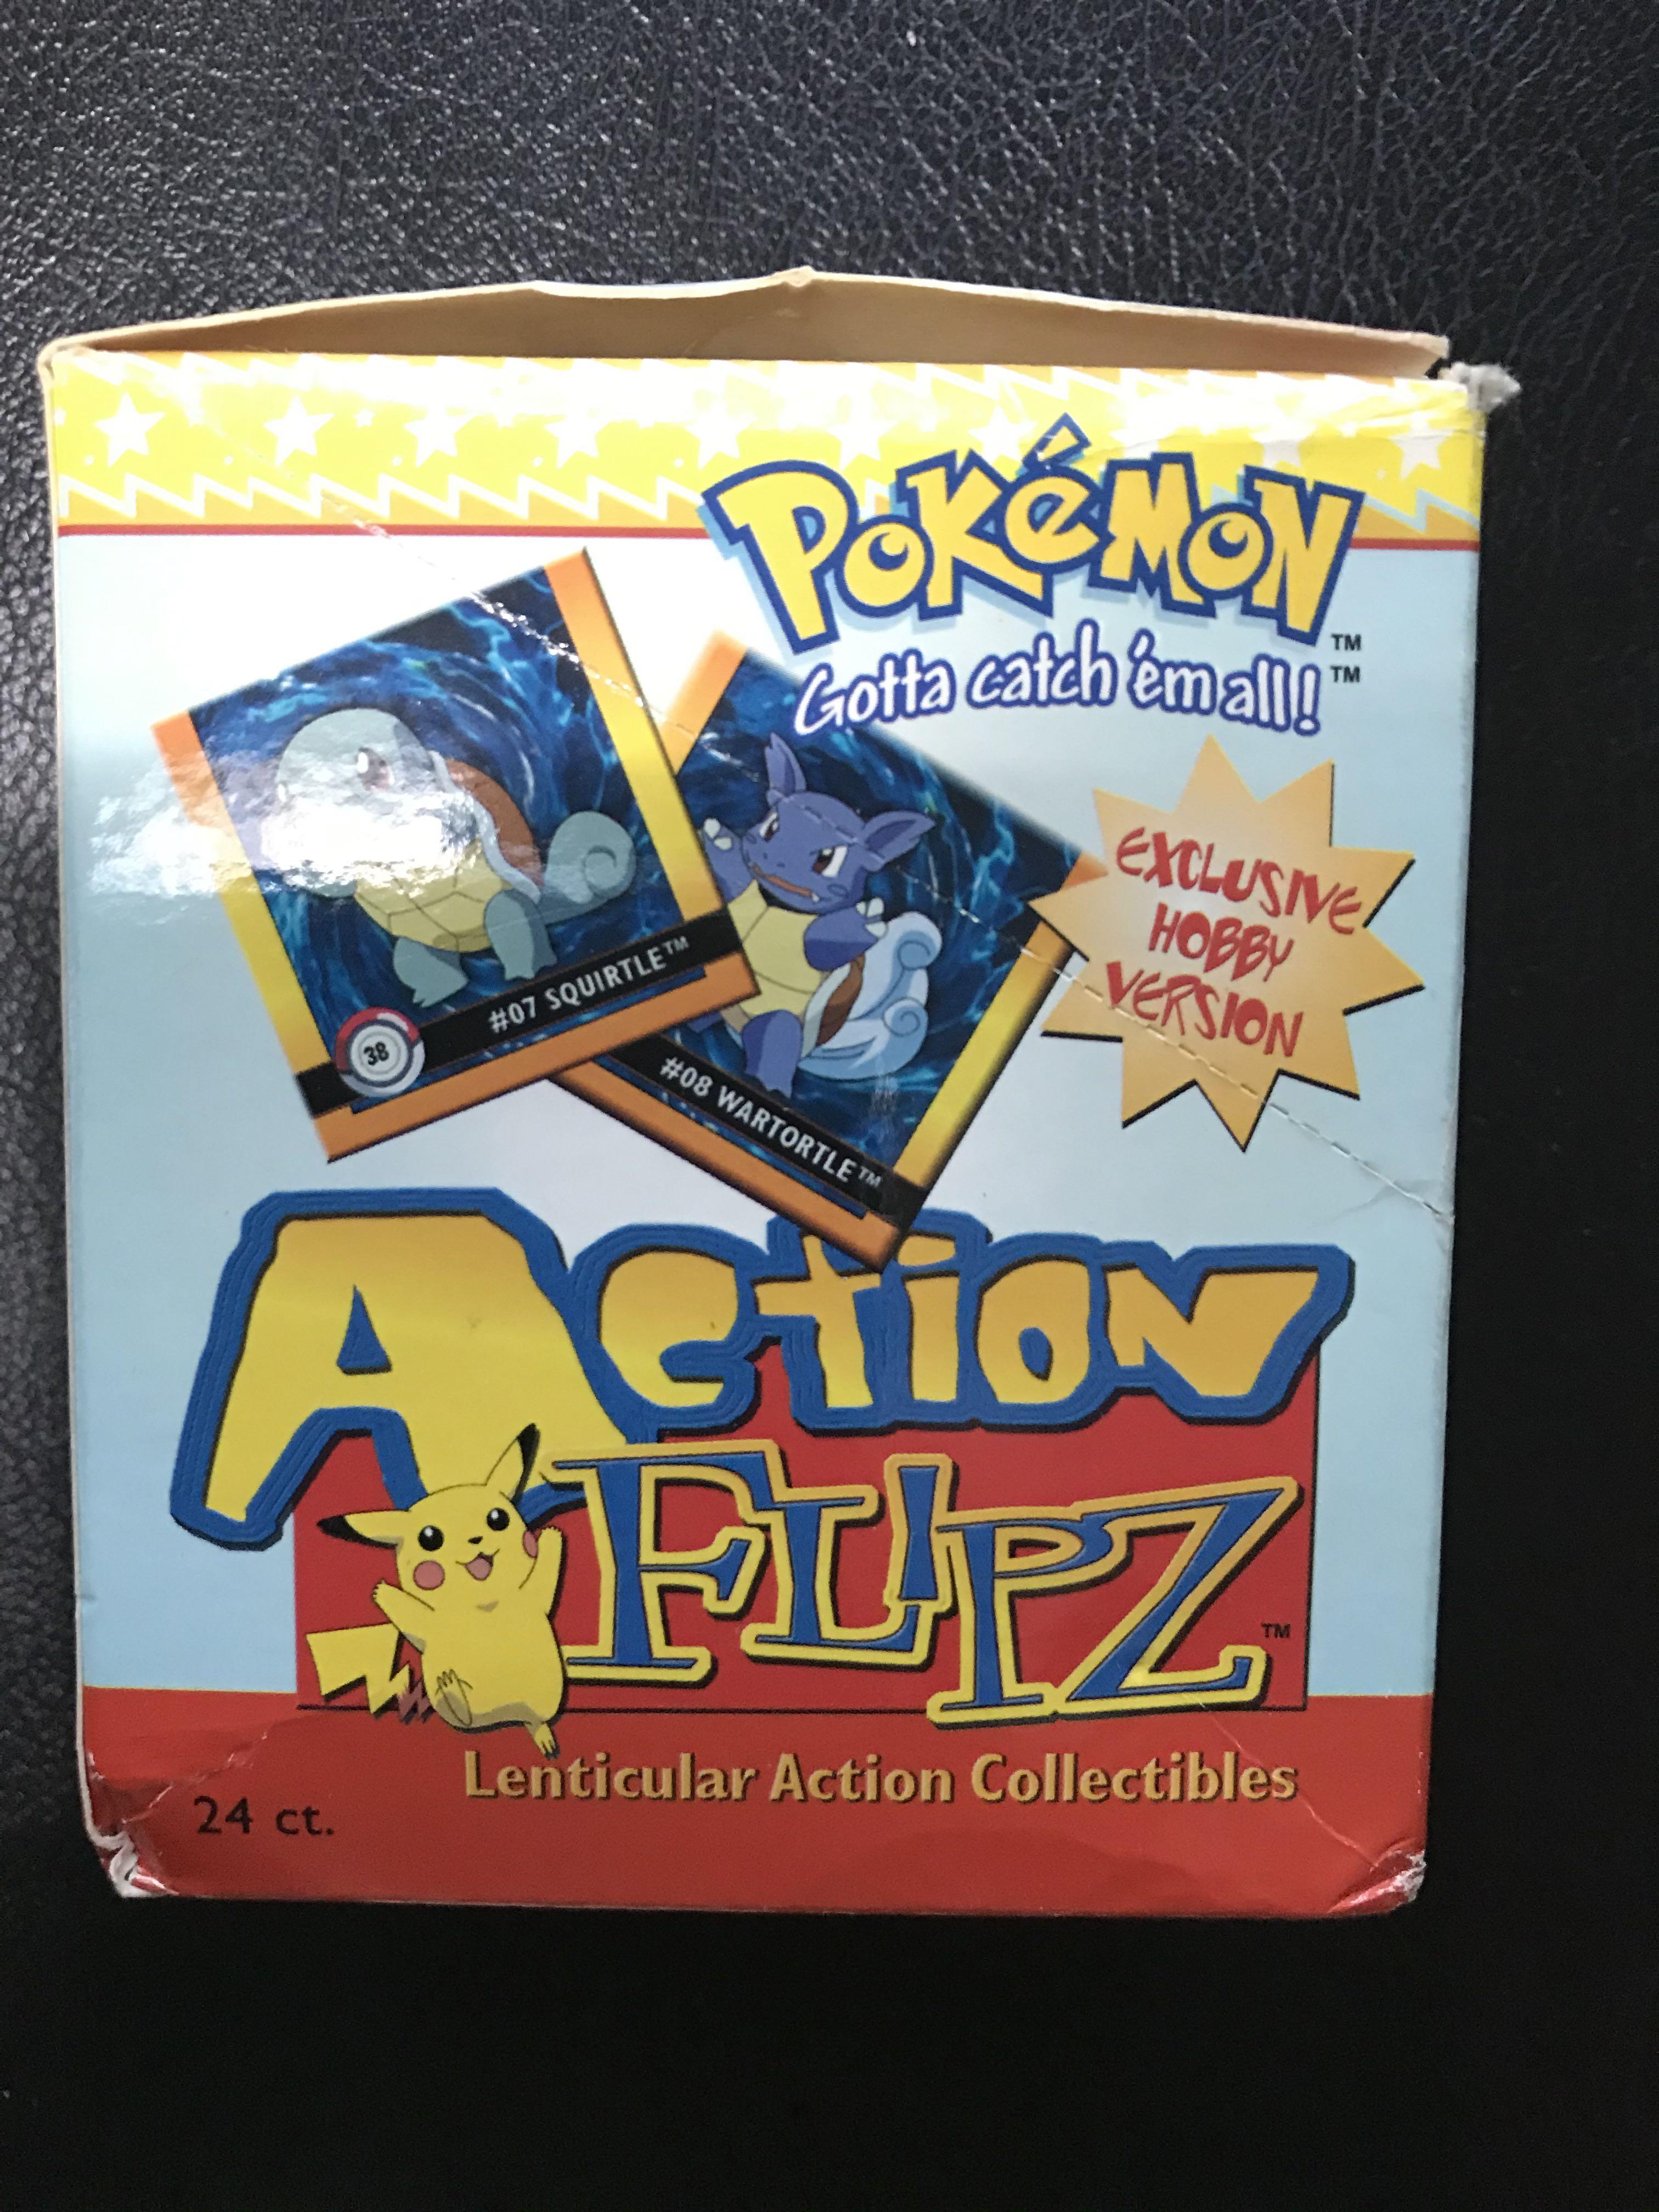 Pokemon (Artbox 1999)